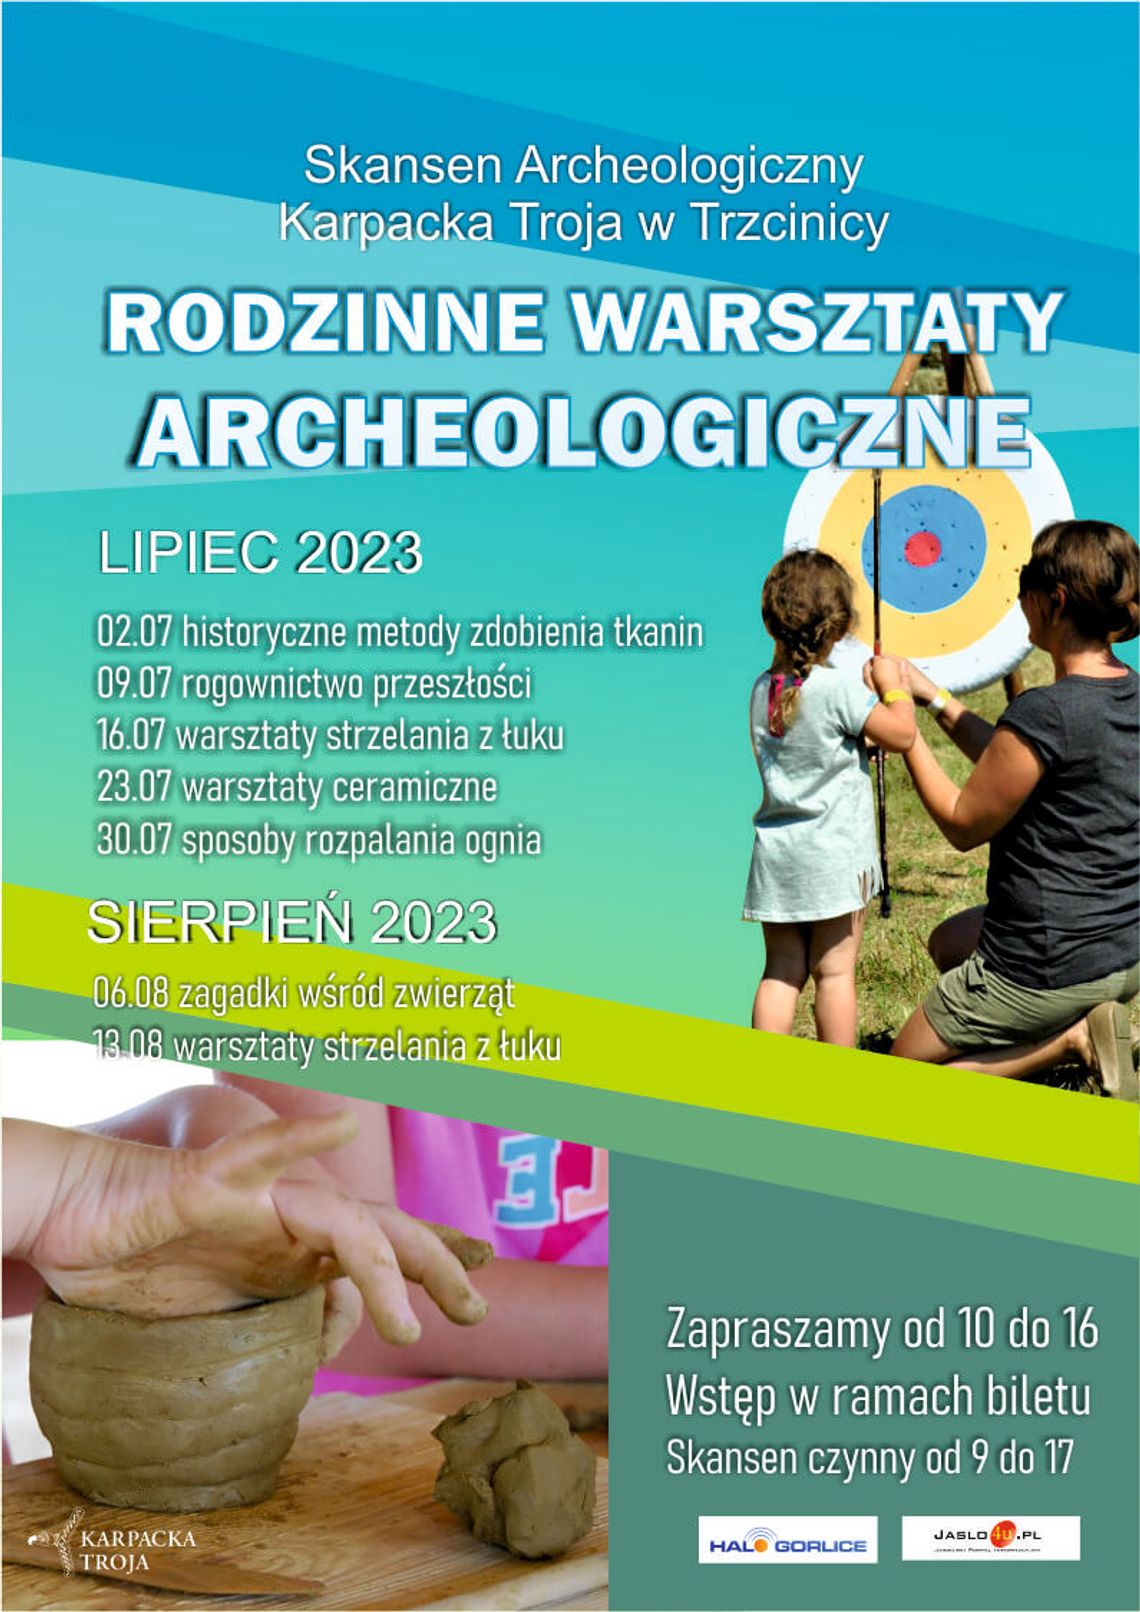 „Rodzinne warsztaty archeologiczne” – Karpacka Troja | halogorlice.info